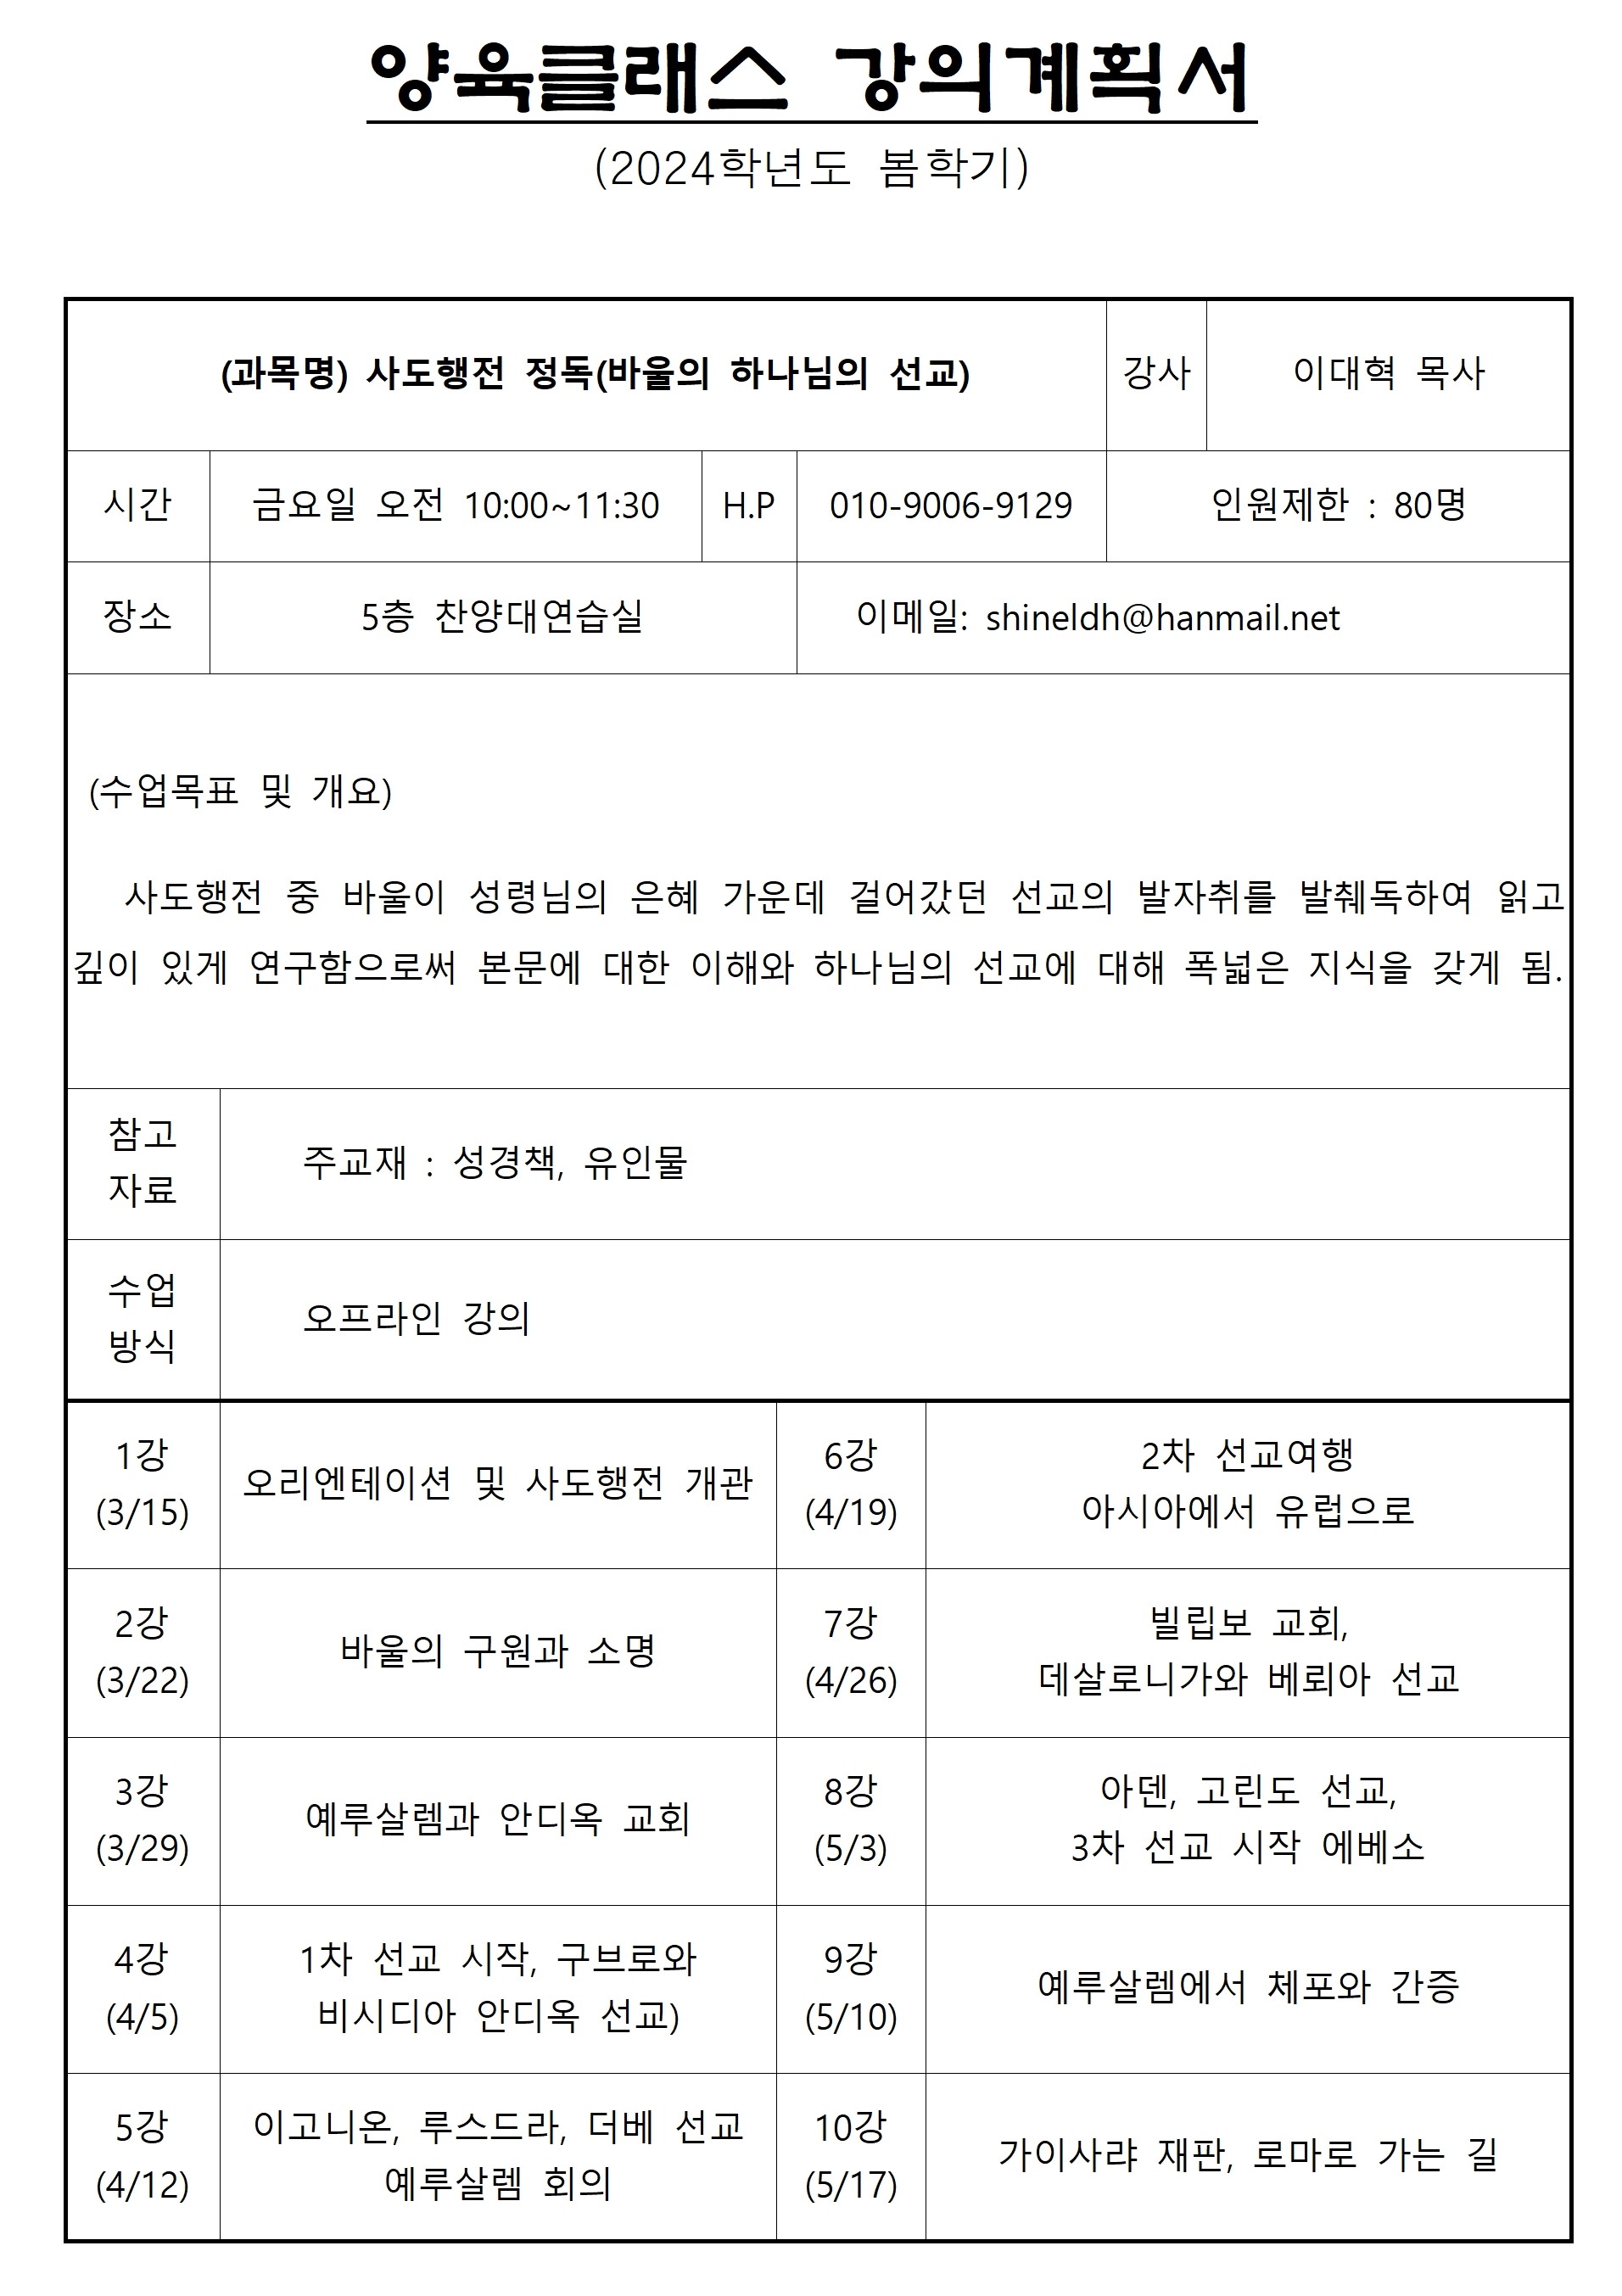 24봄 양육클래스 강의계획서 (이대혁)001.jpg